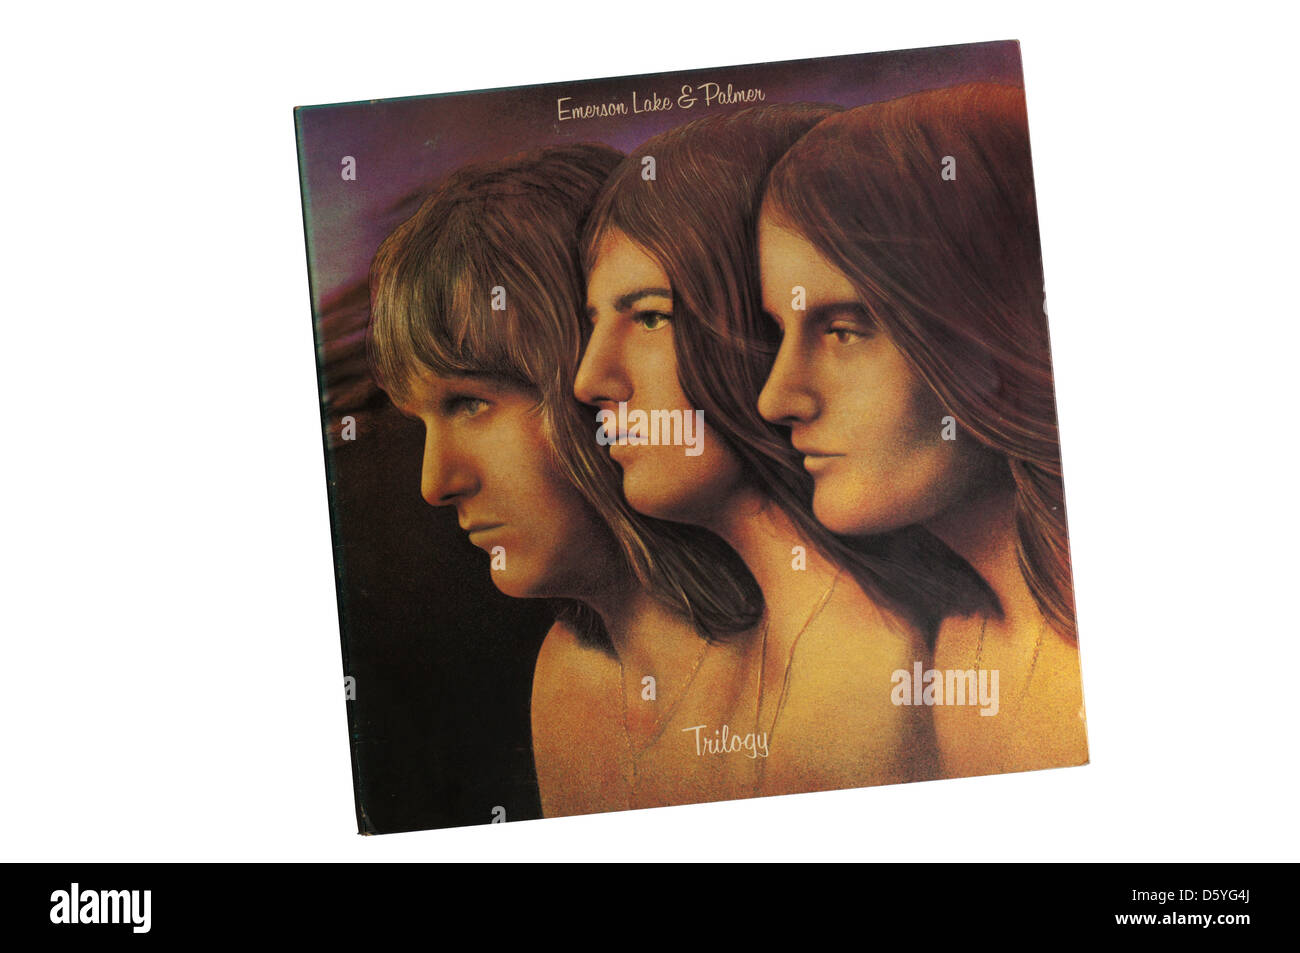 Trilogie wurde das 3. Studioalbum der englischen progressive-Rock-Band Emerson, Lake & Palmer, 1972 veröffentlicht Stockfoto